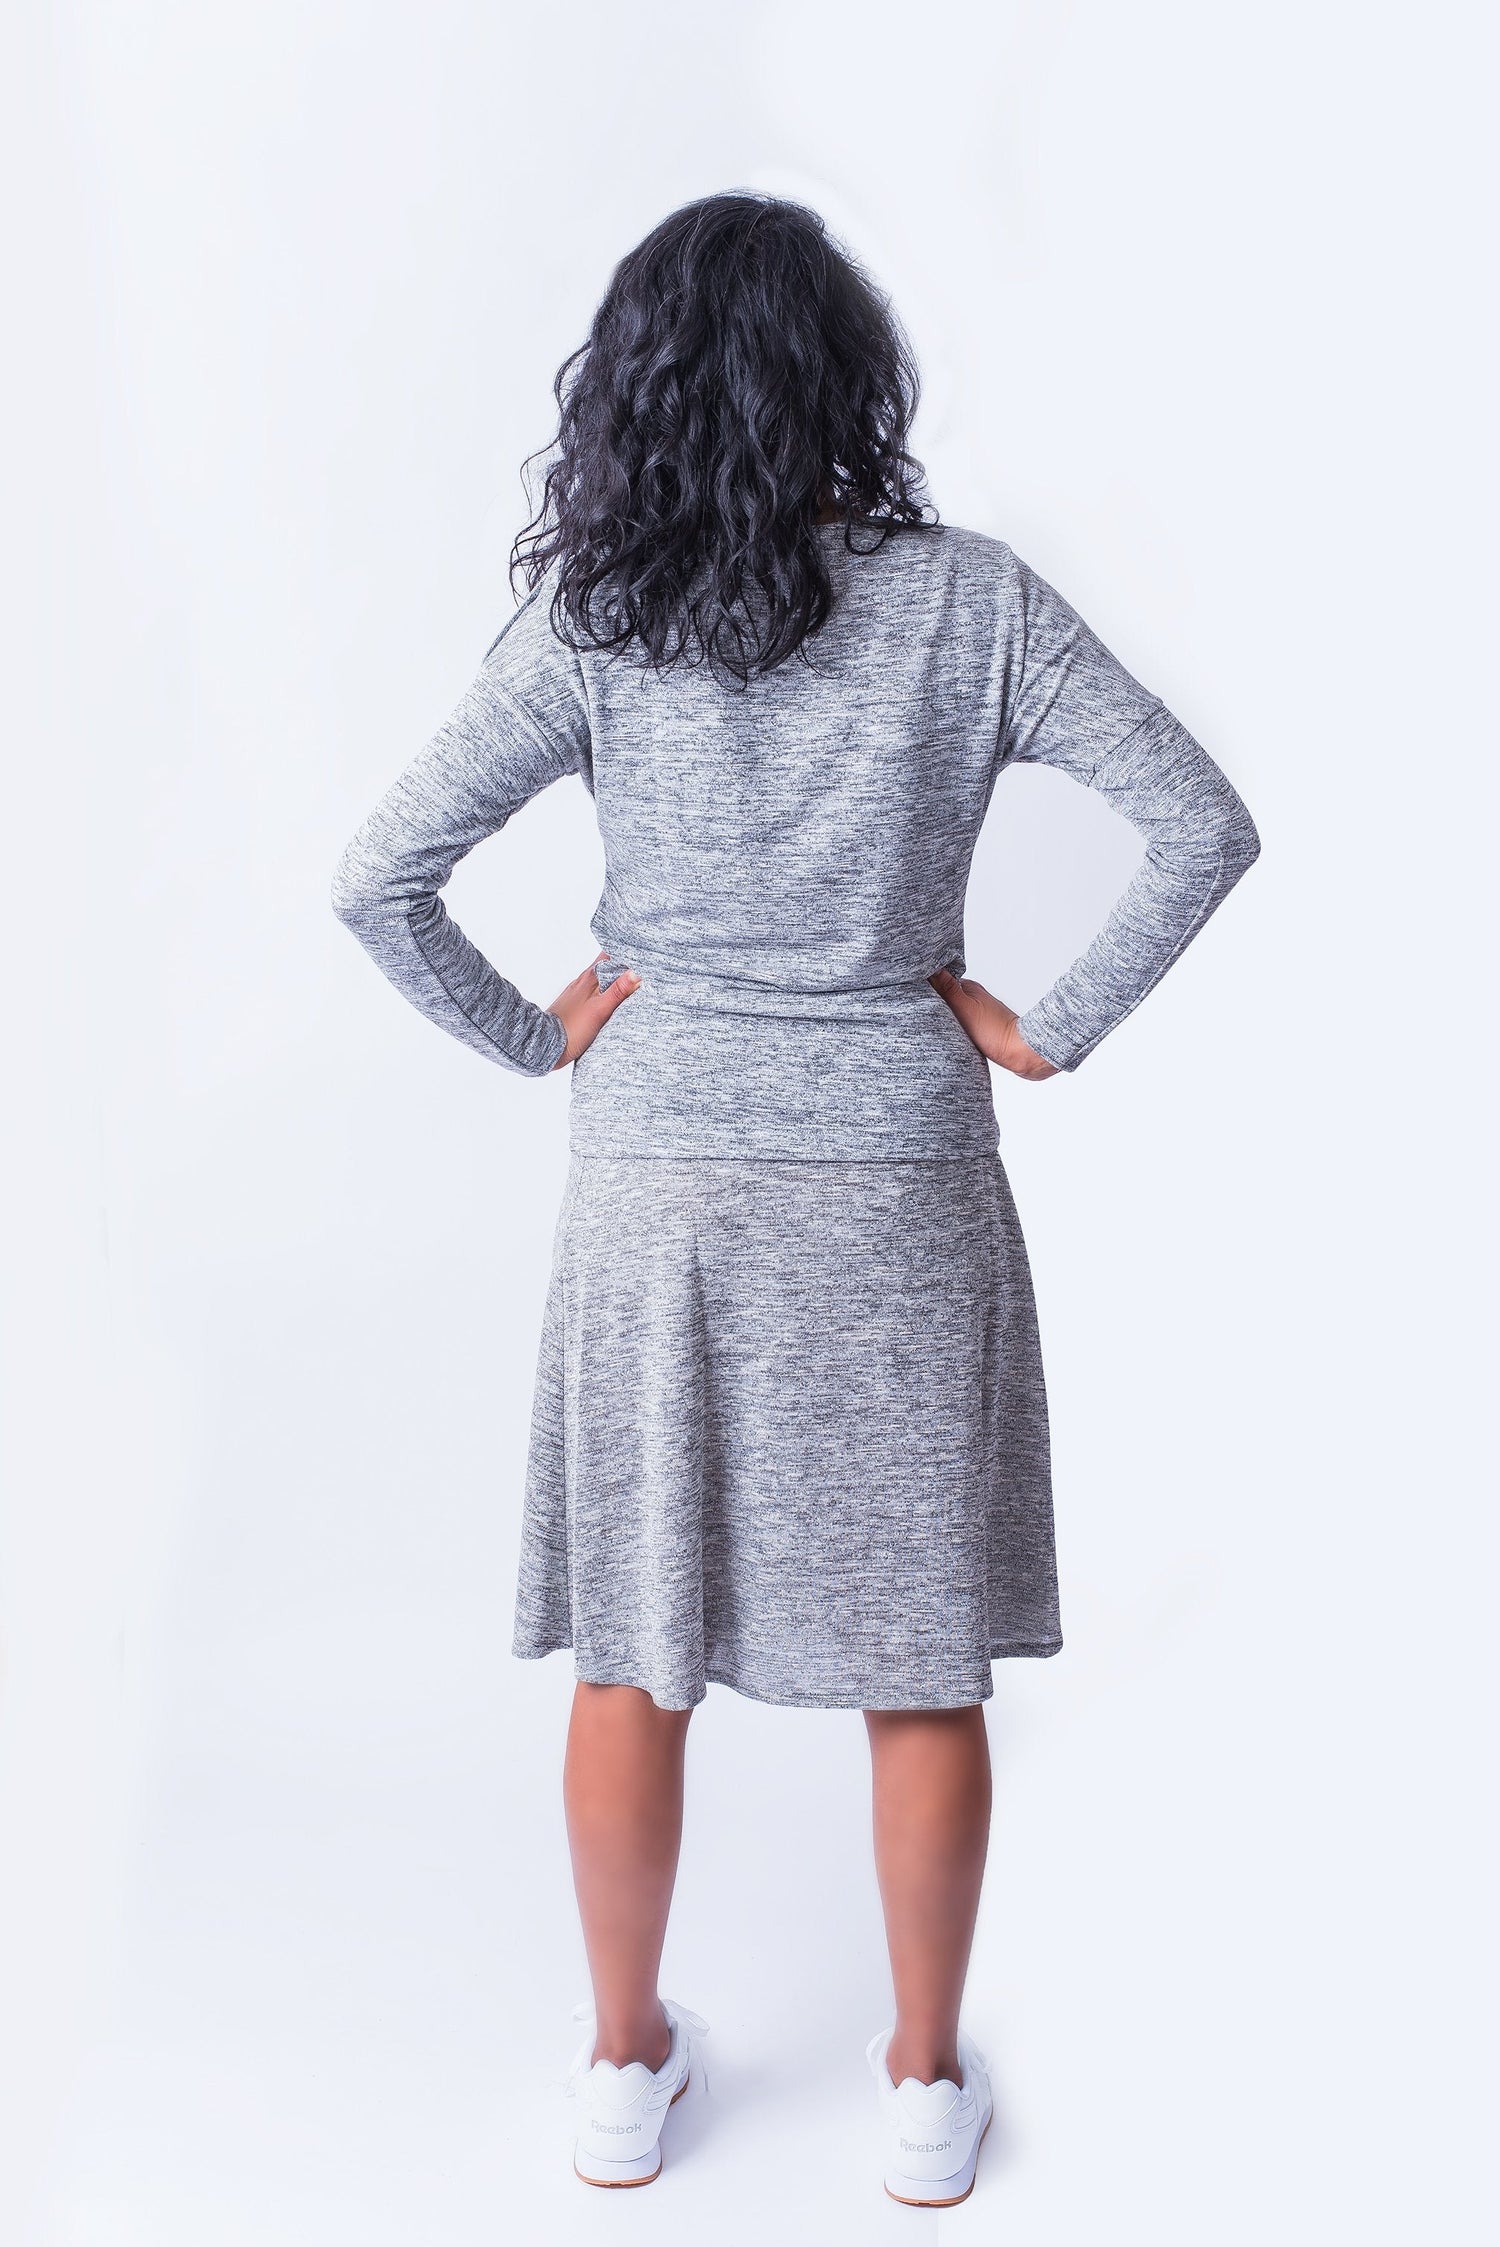 Woman facing backwards wearing grey long sleeve top and matching grey skirt.